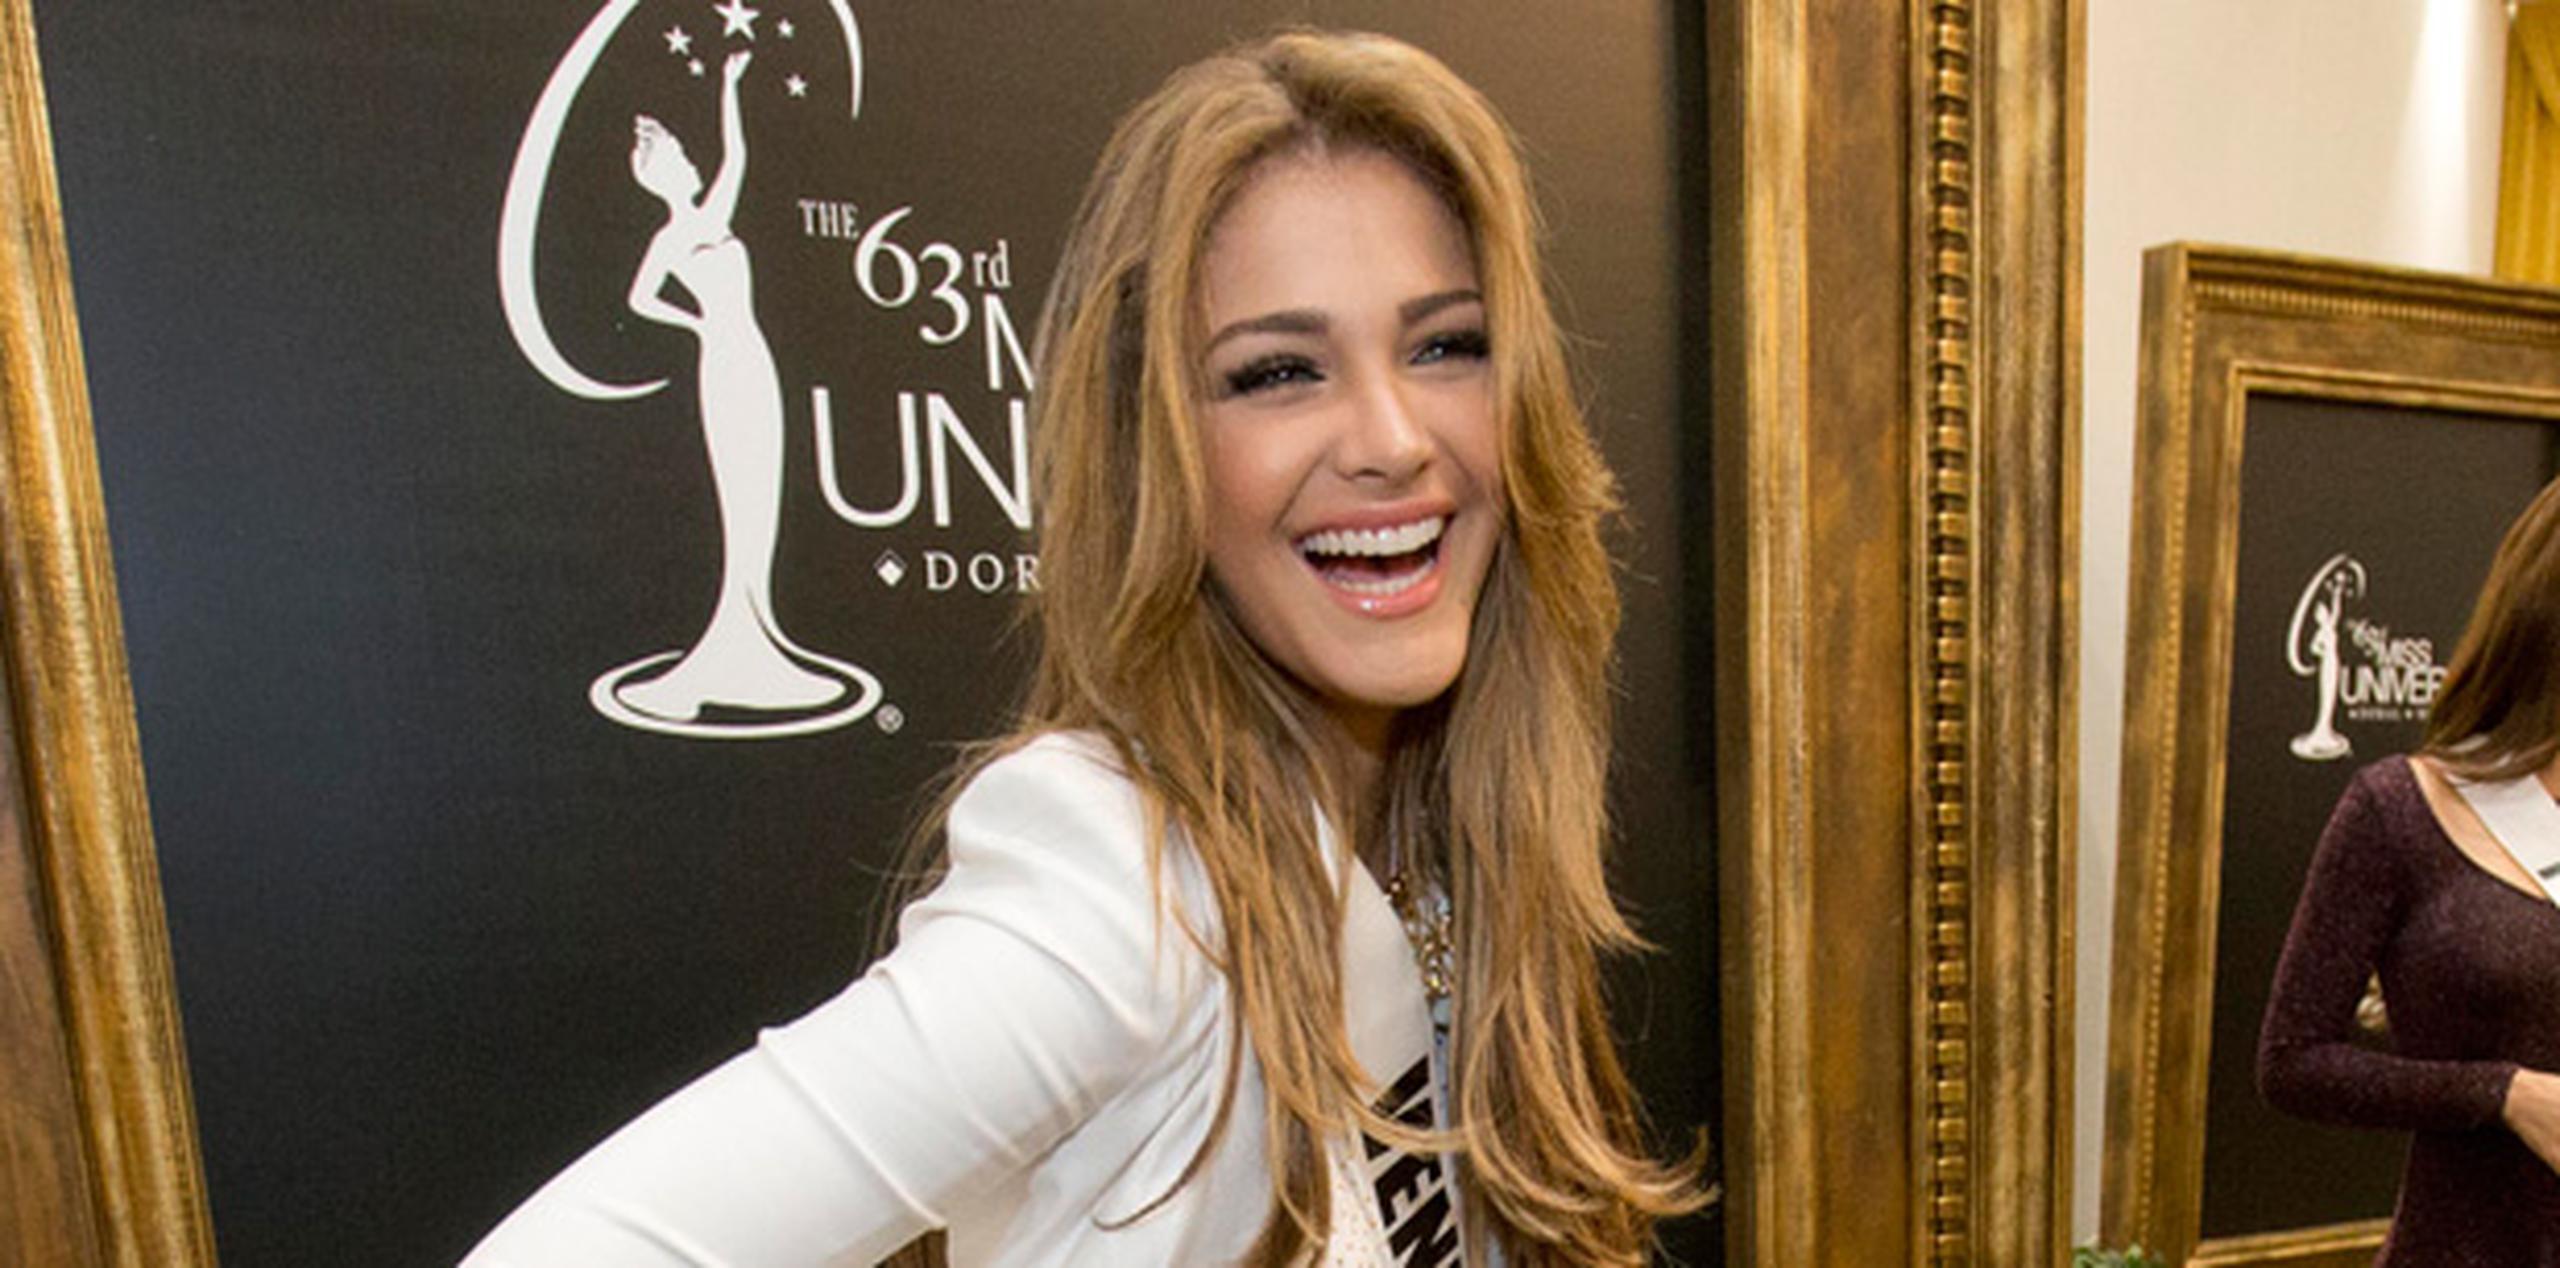 Las declaraciones de Migbelis tuvieron lugar tras la presentación oficial de las 21 aspirantes de Latinoamérica y España en el certamen Miss Universo 2014, en una conferencia de prensa en la que se anunció que la actriz Blanca Soto será parte del jurado. (AP)